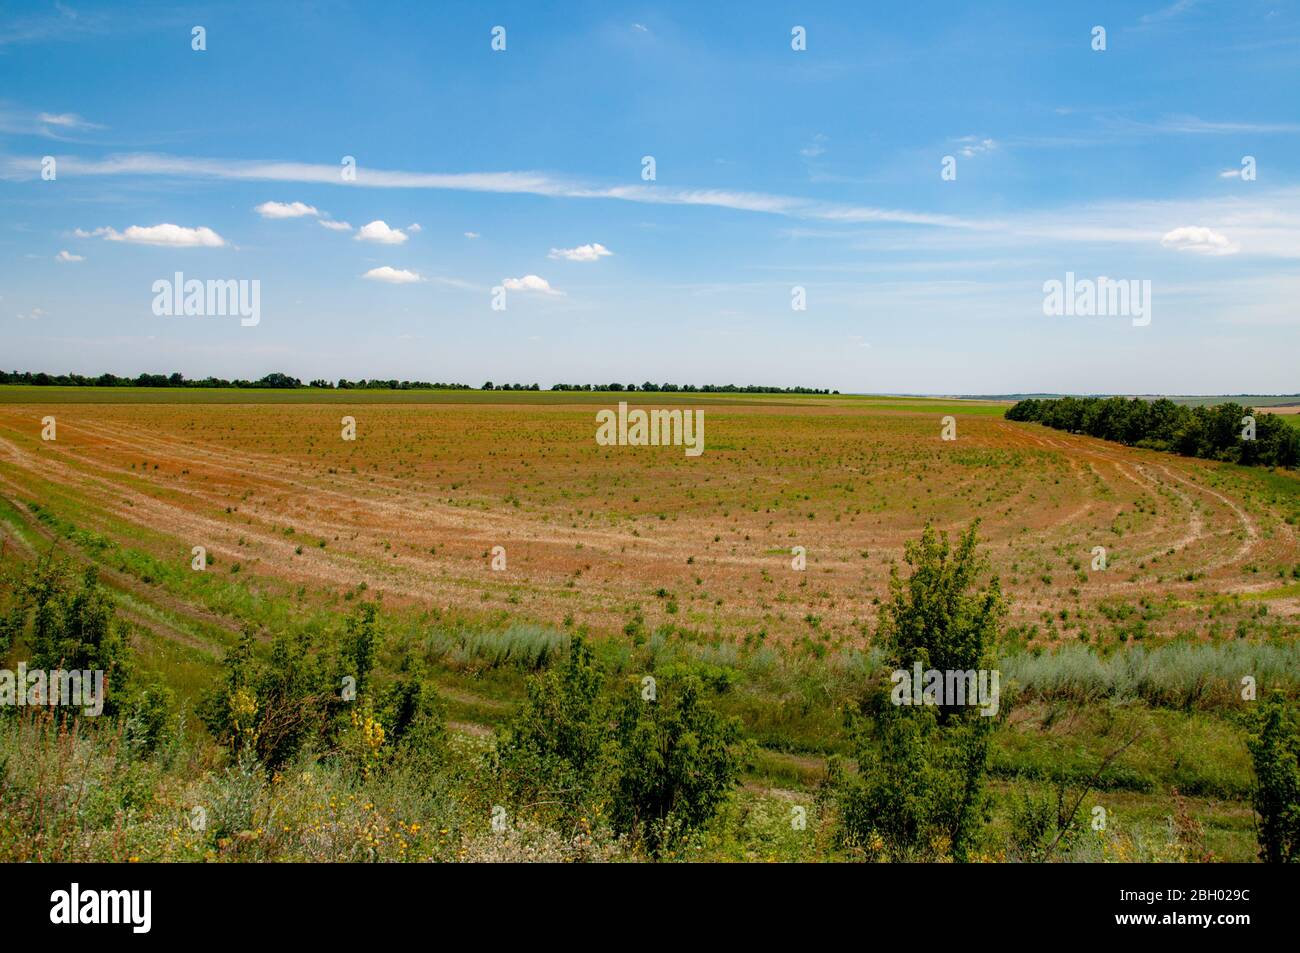 Ebene Landschaft von Getreidepflanzen Feld mit Egen und leuchtend blauen Himmel über Horizont. Idyllische Aussicht auf die Landschaft in Europa. Stockfoto